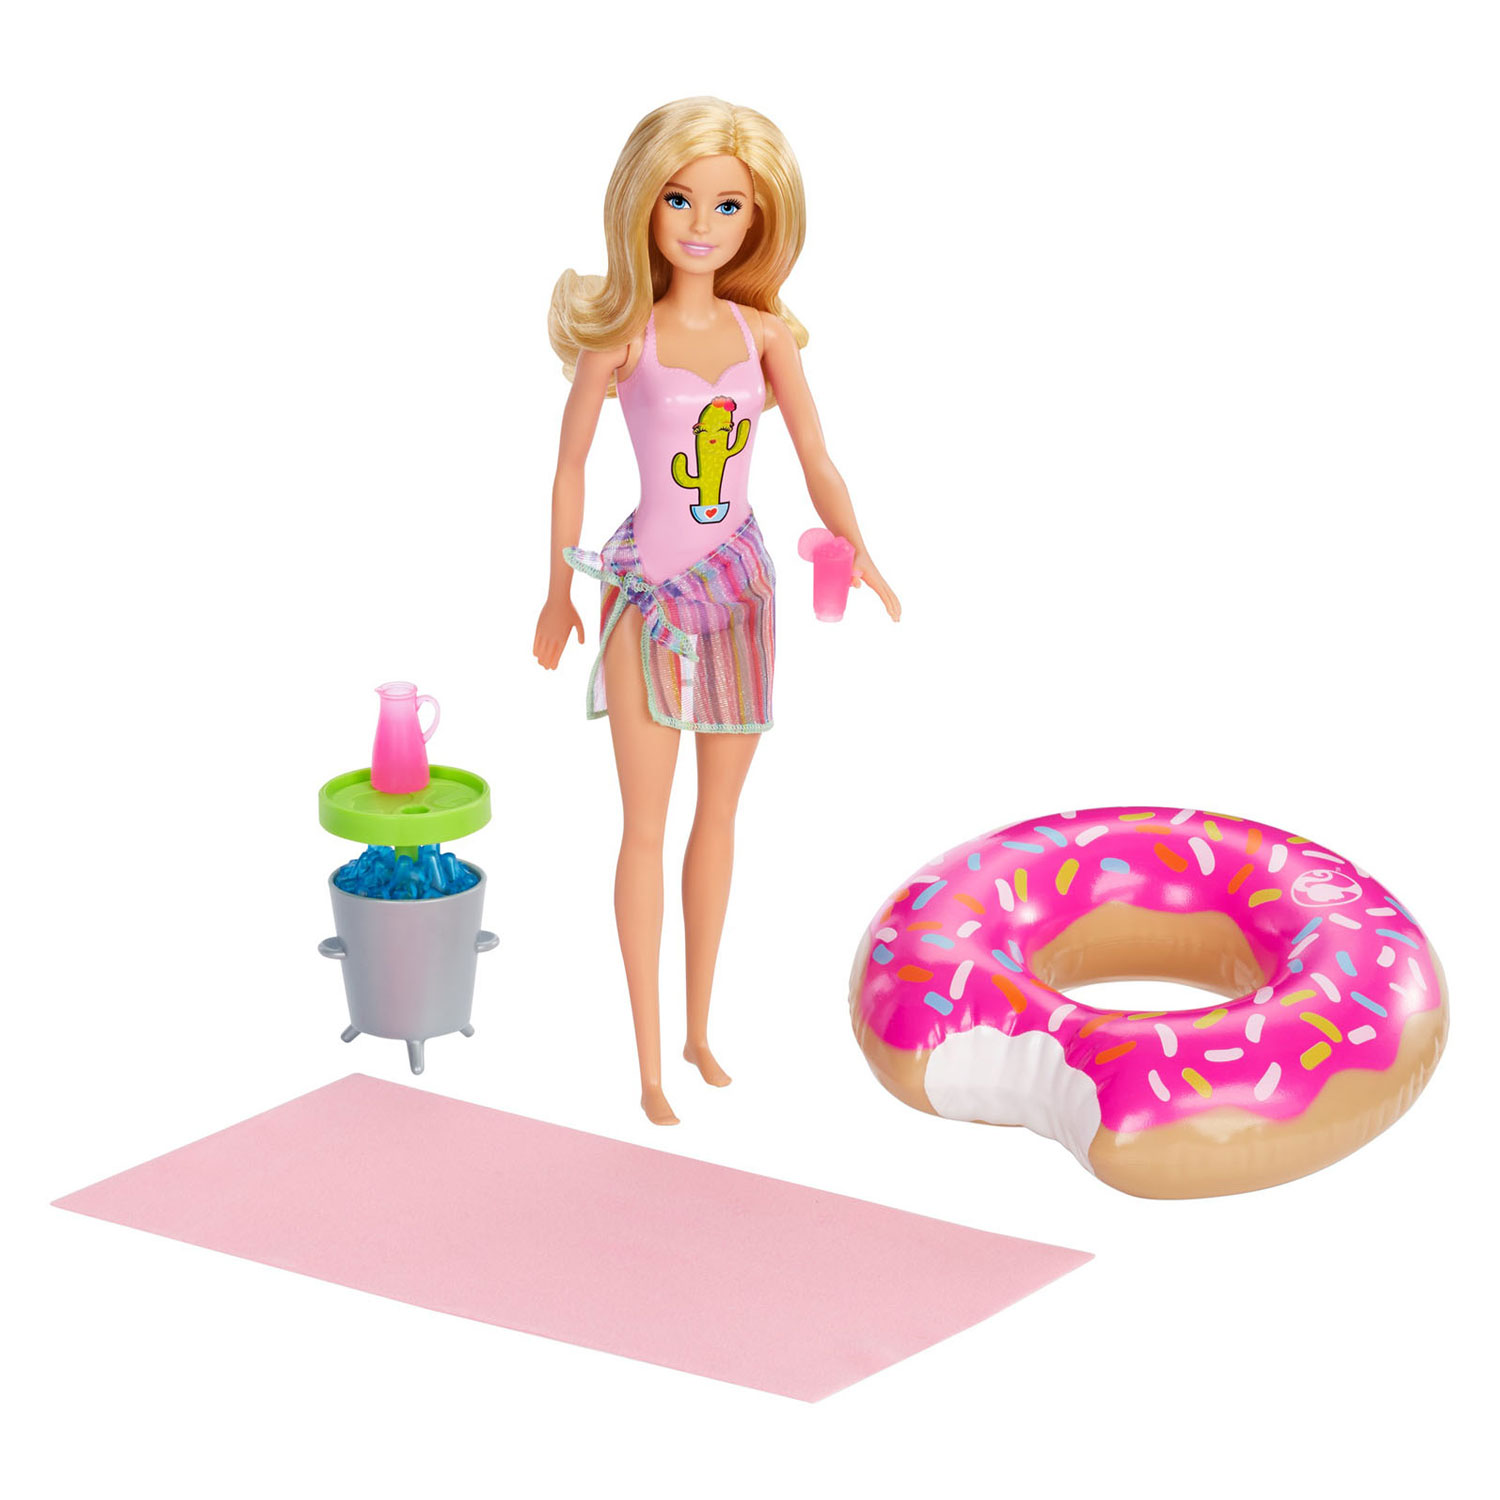 Barbie Pop Pool Party Speelset